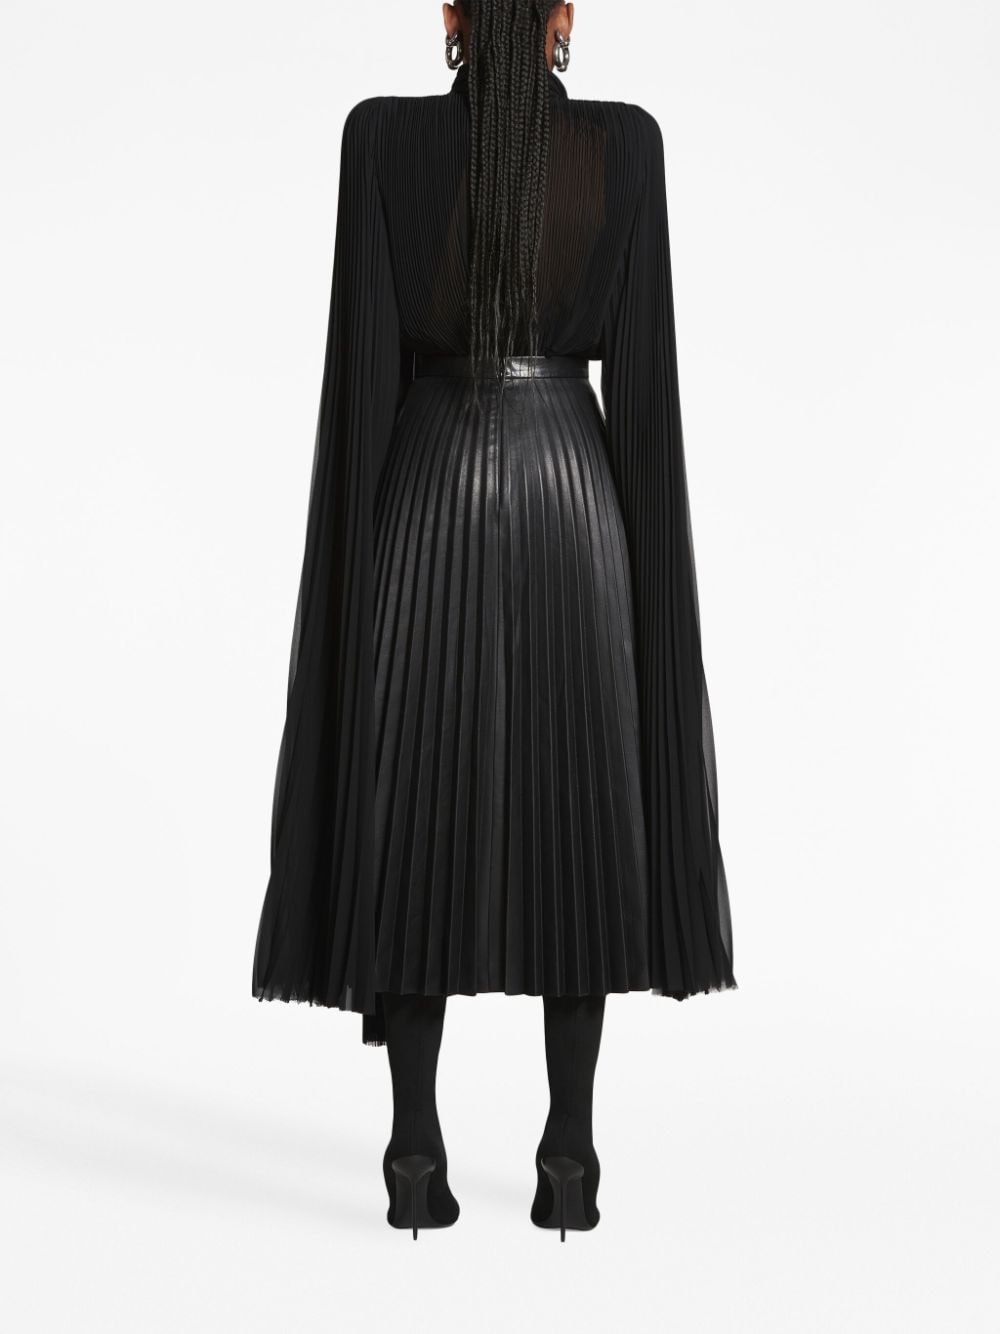 BALENCIAGA Pleated Leather Skirt for Women - Black, High Waist, Straight Edge